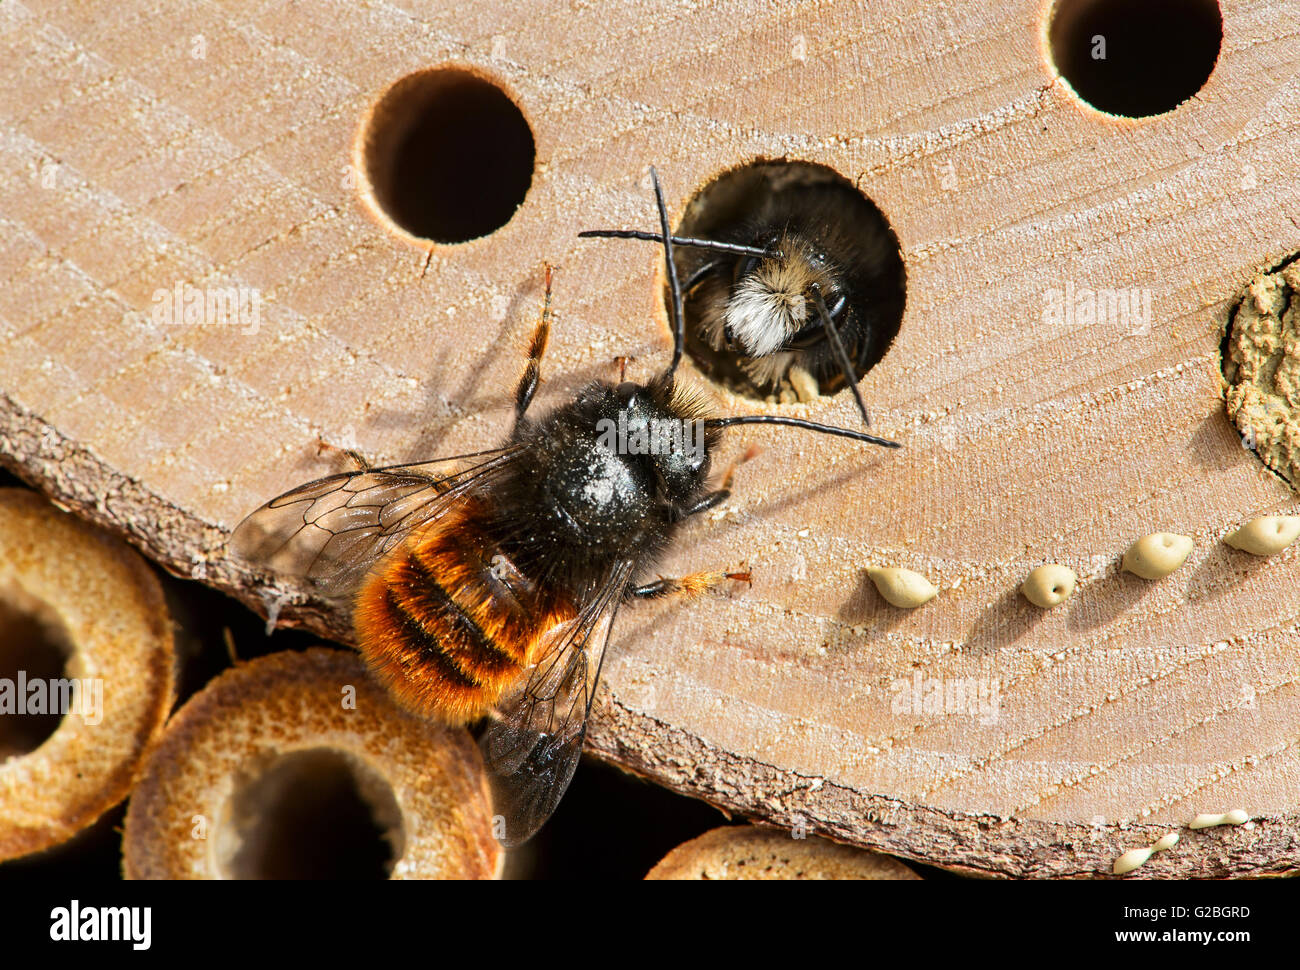 Rouge d'incubation (abeilles Osmia bicornis), de la famille des Megachilidae (Megachilidae), l'Apiculture, site de reproduction artificielle de l'hôtel Banque D'Images